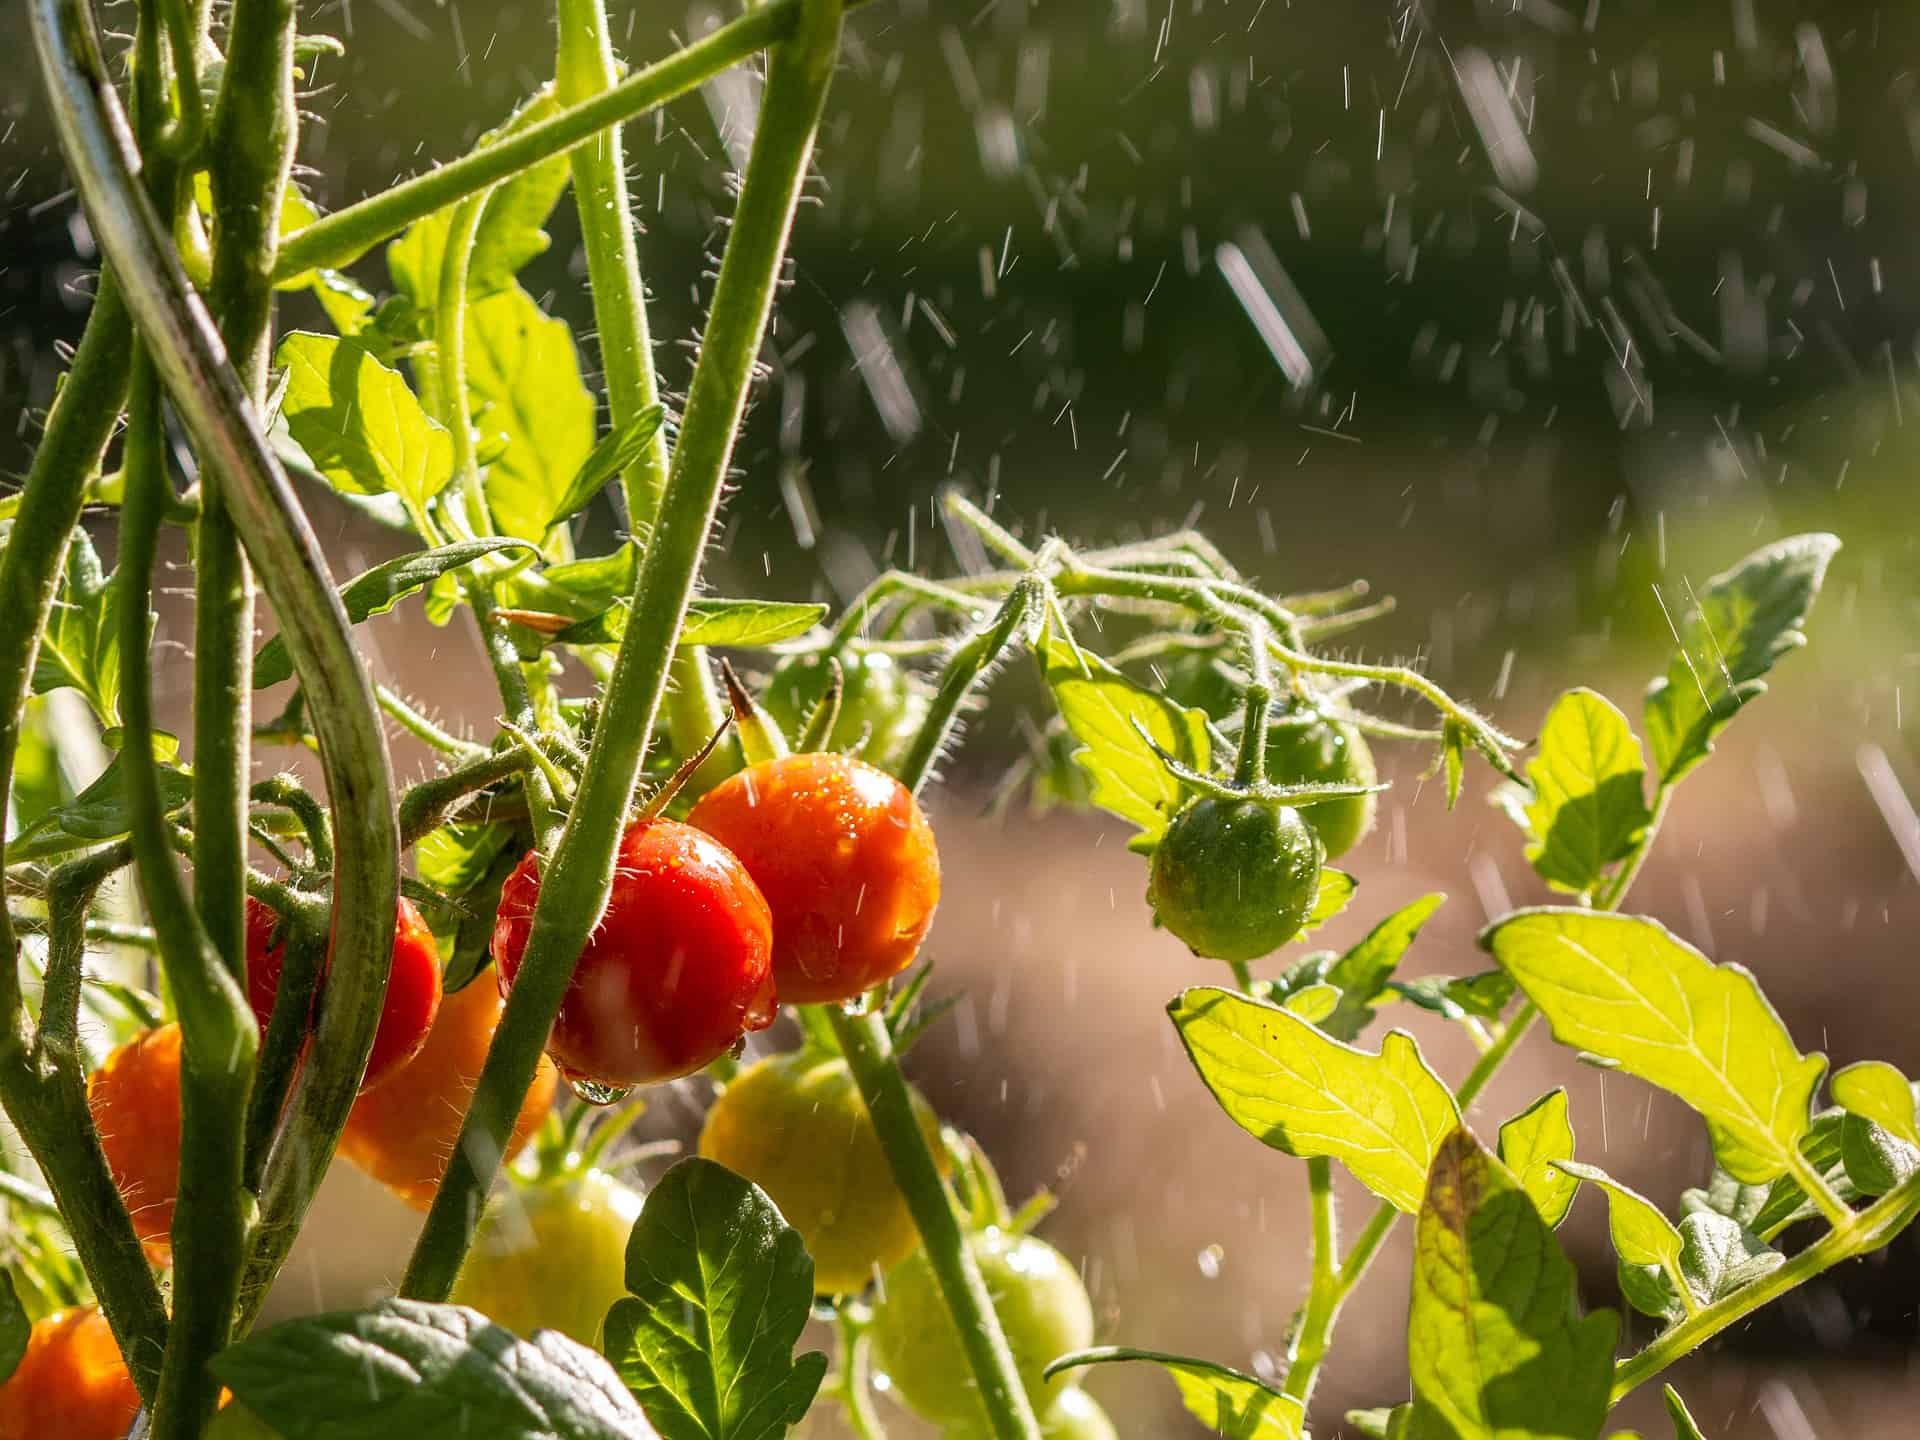 Tomato plants in rainy weather